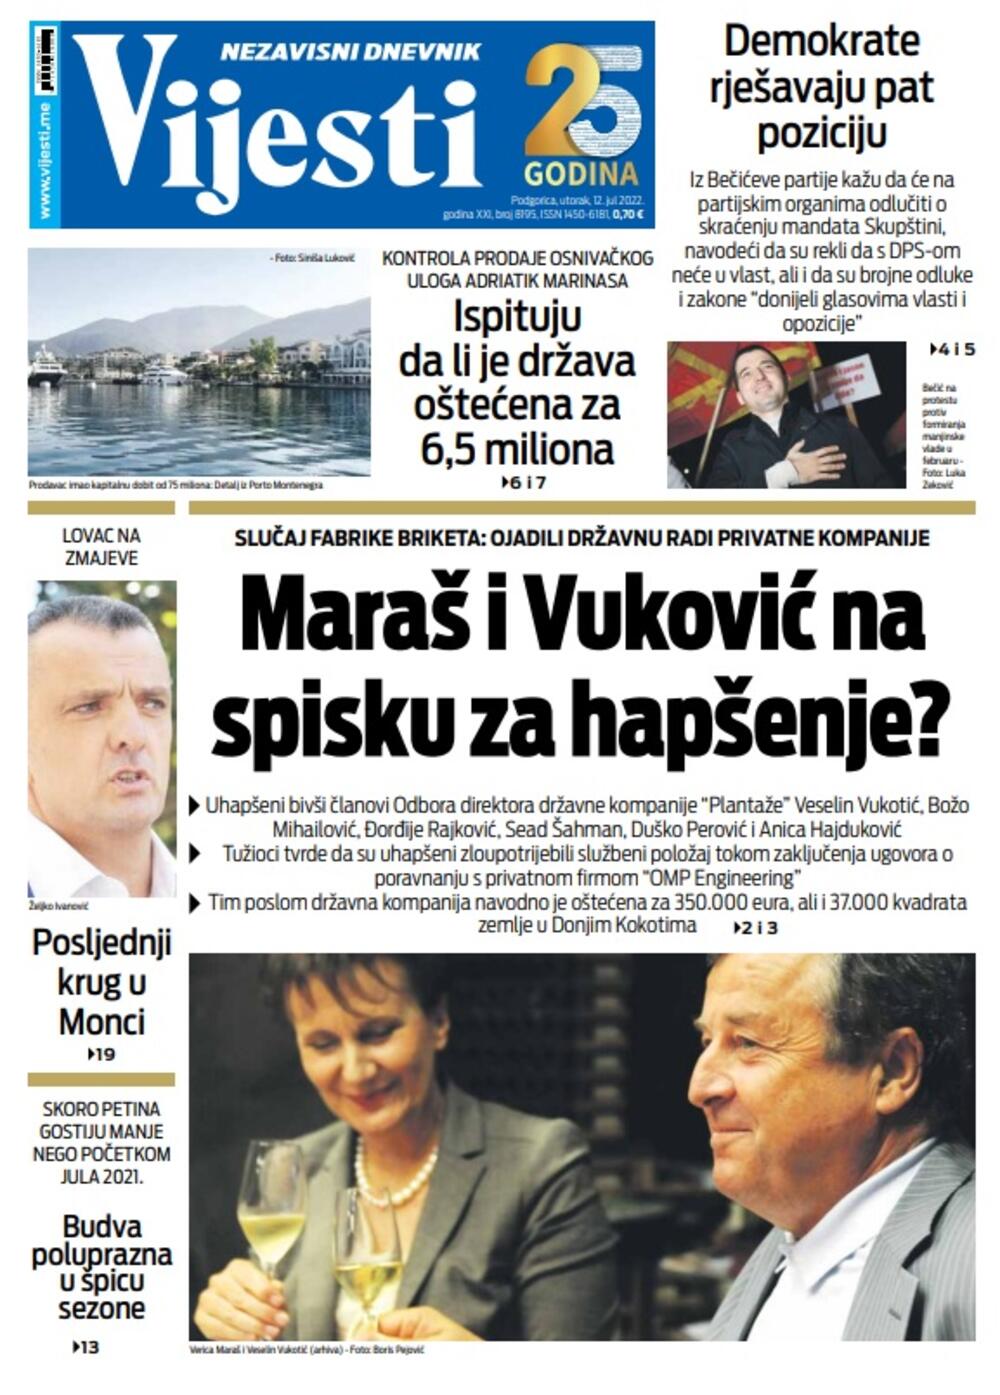 Naslovna strana "Vijesti" za 12. jul 2022., Foto: Vijesti